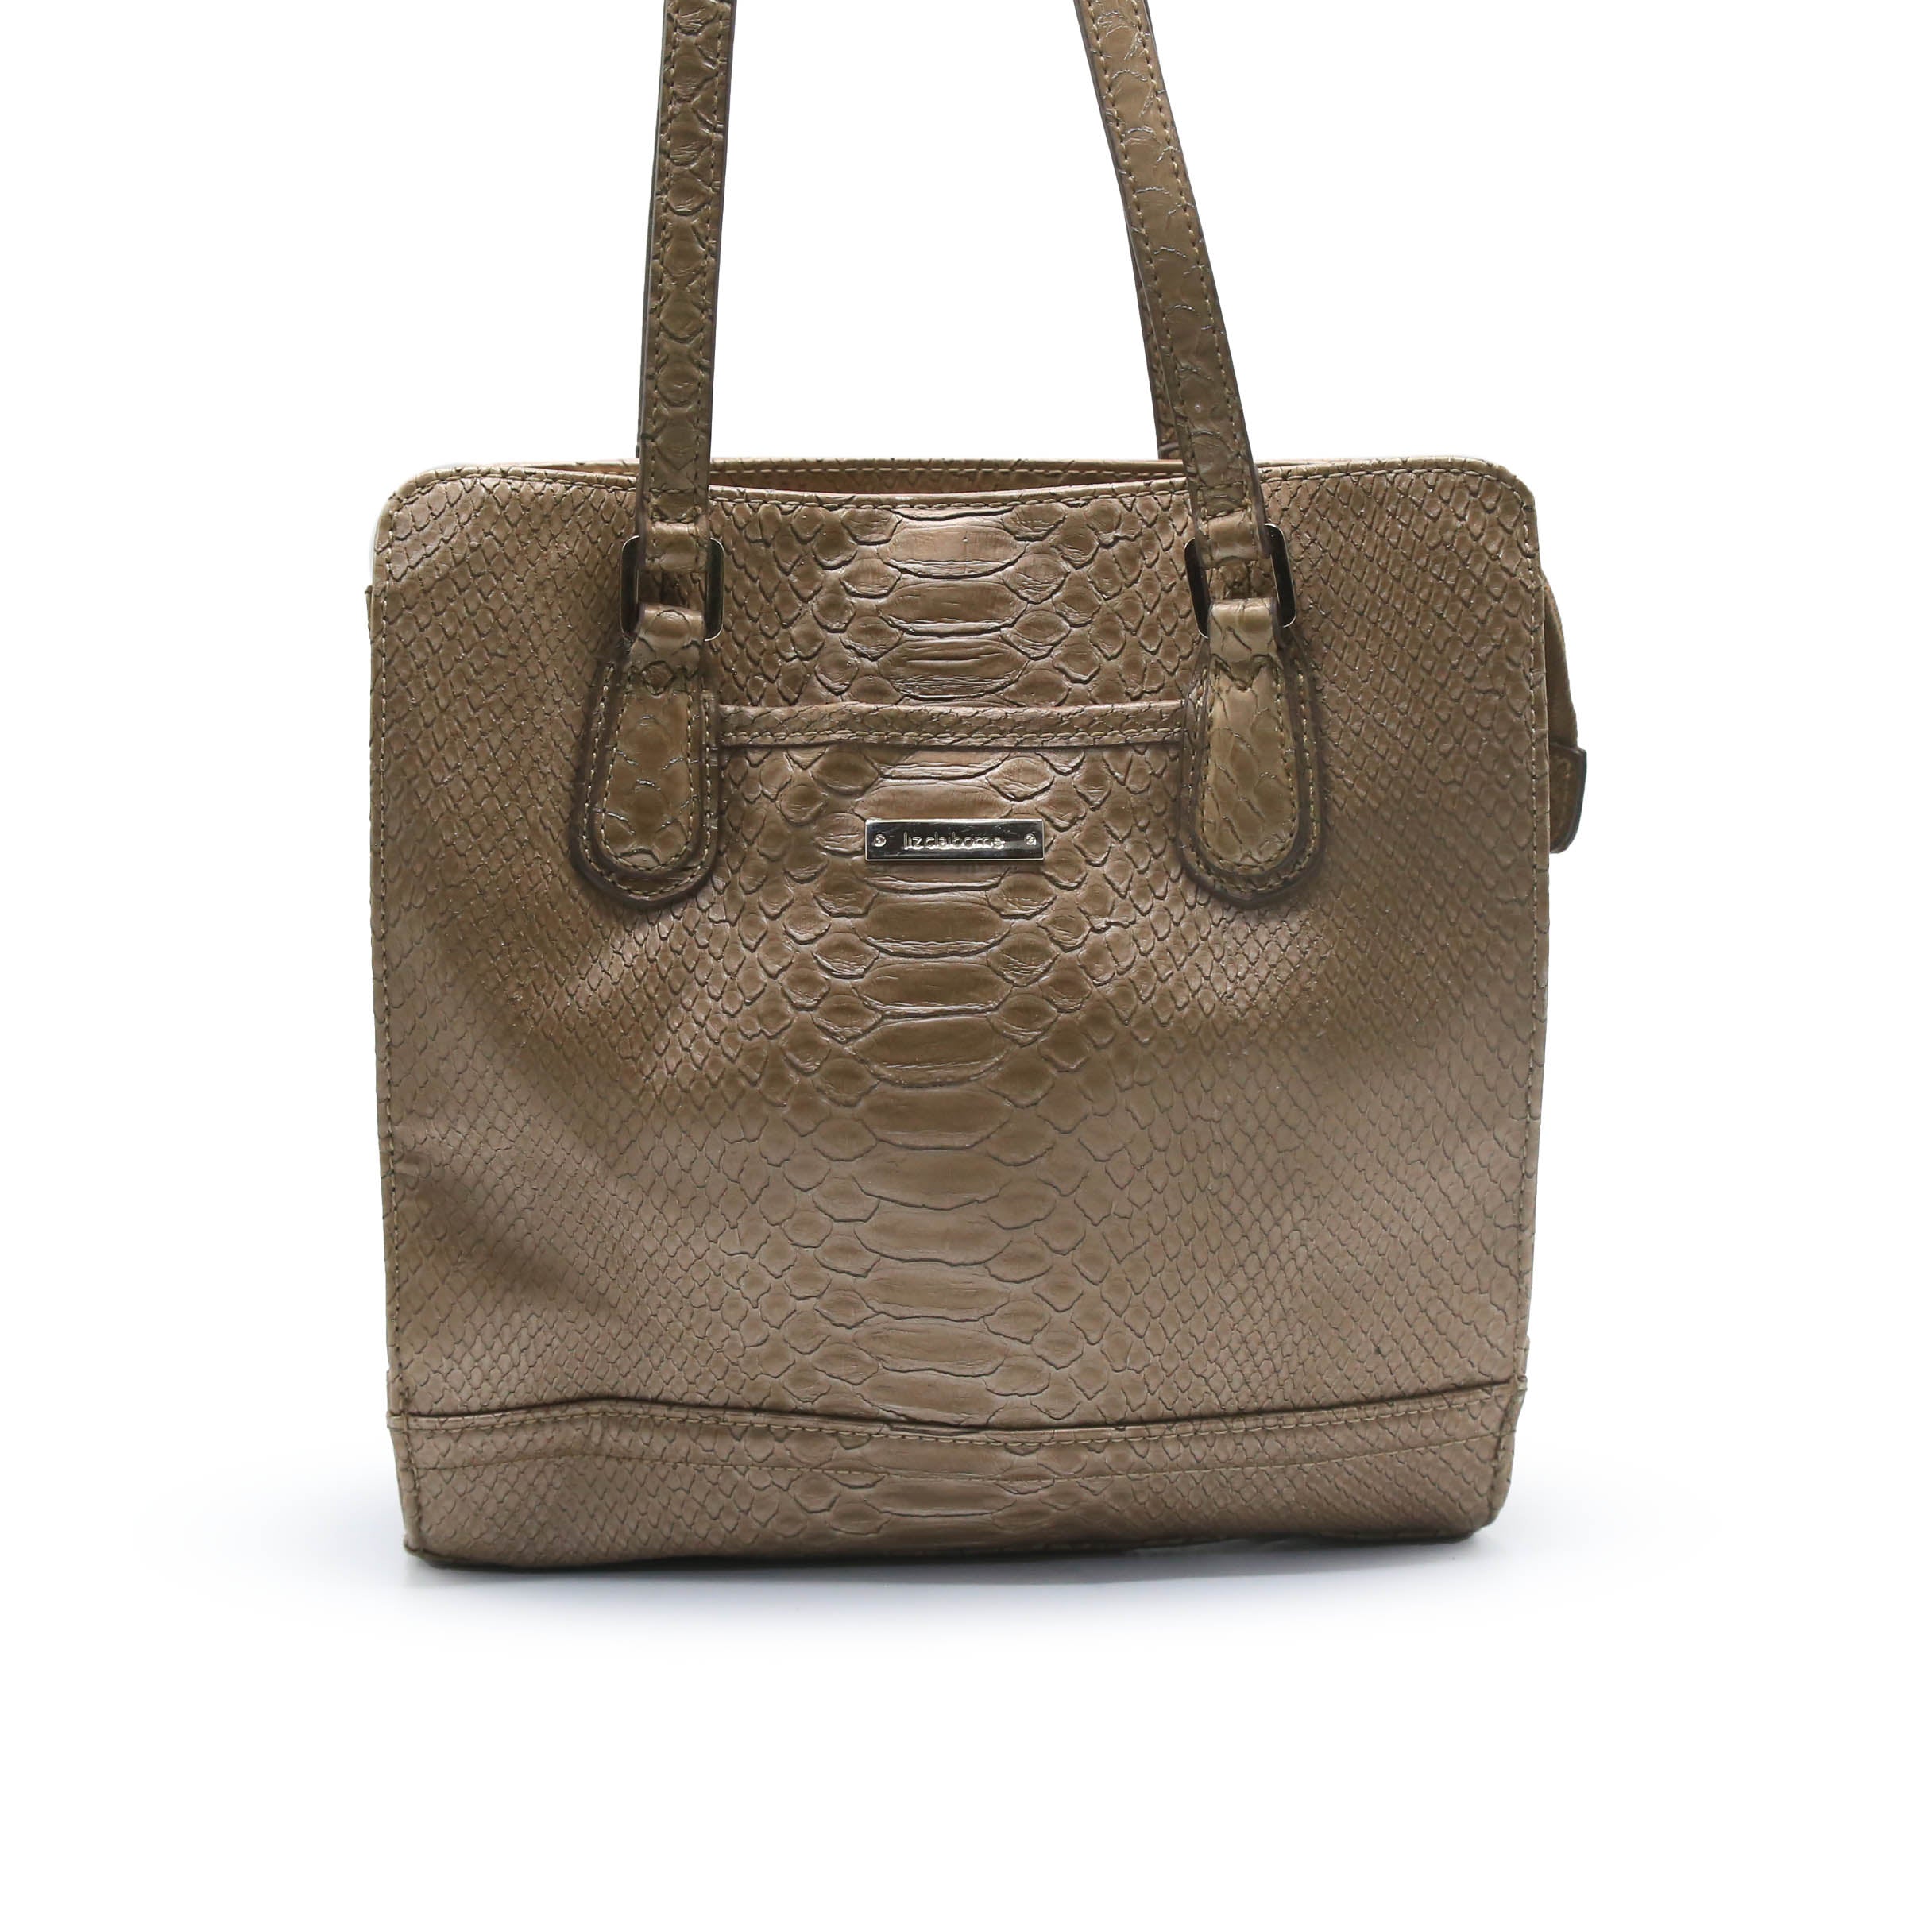 Liz Claiborne White Floral Leather Gold Hardware Shoulder Bag Handbag